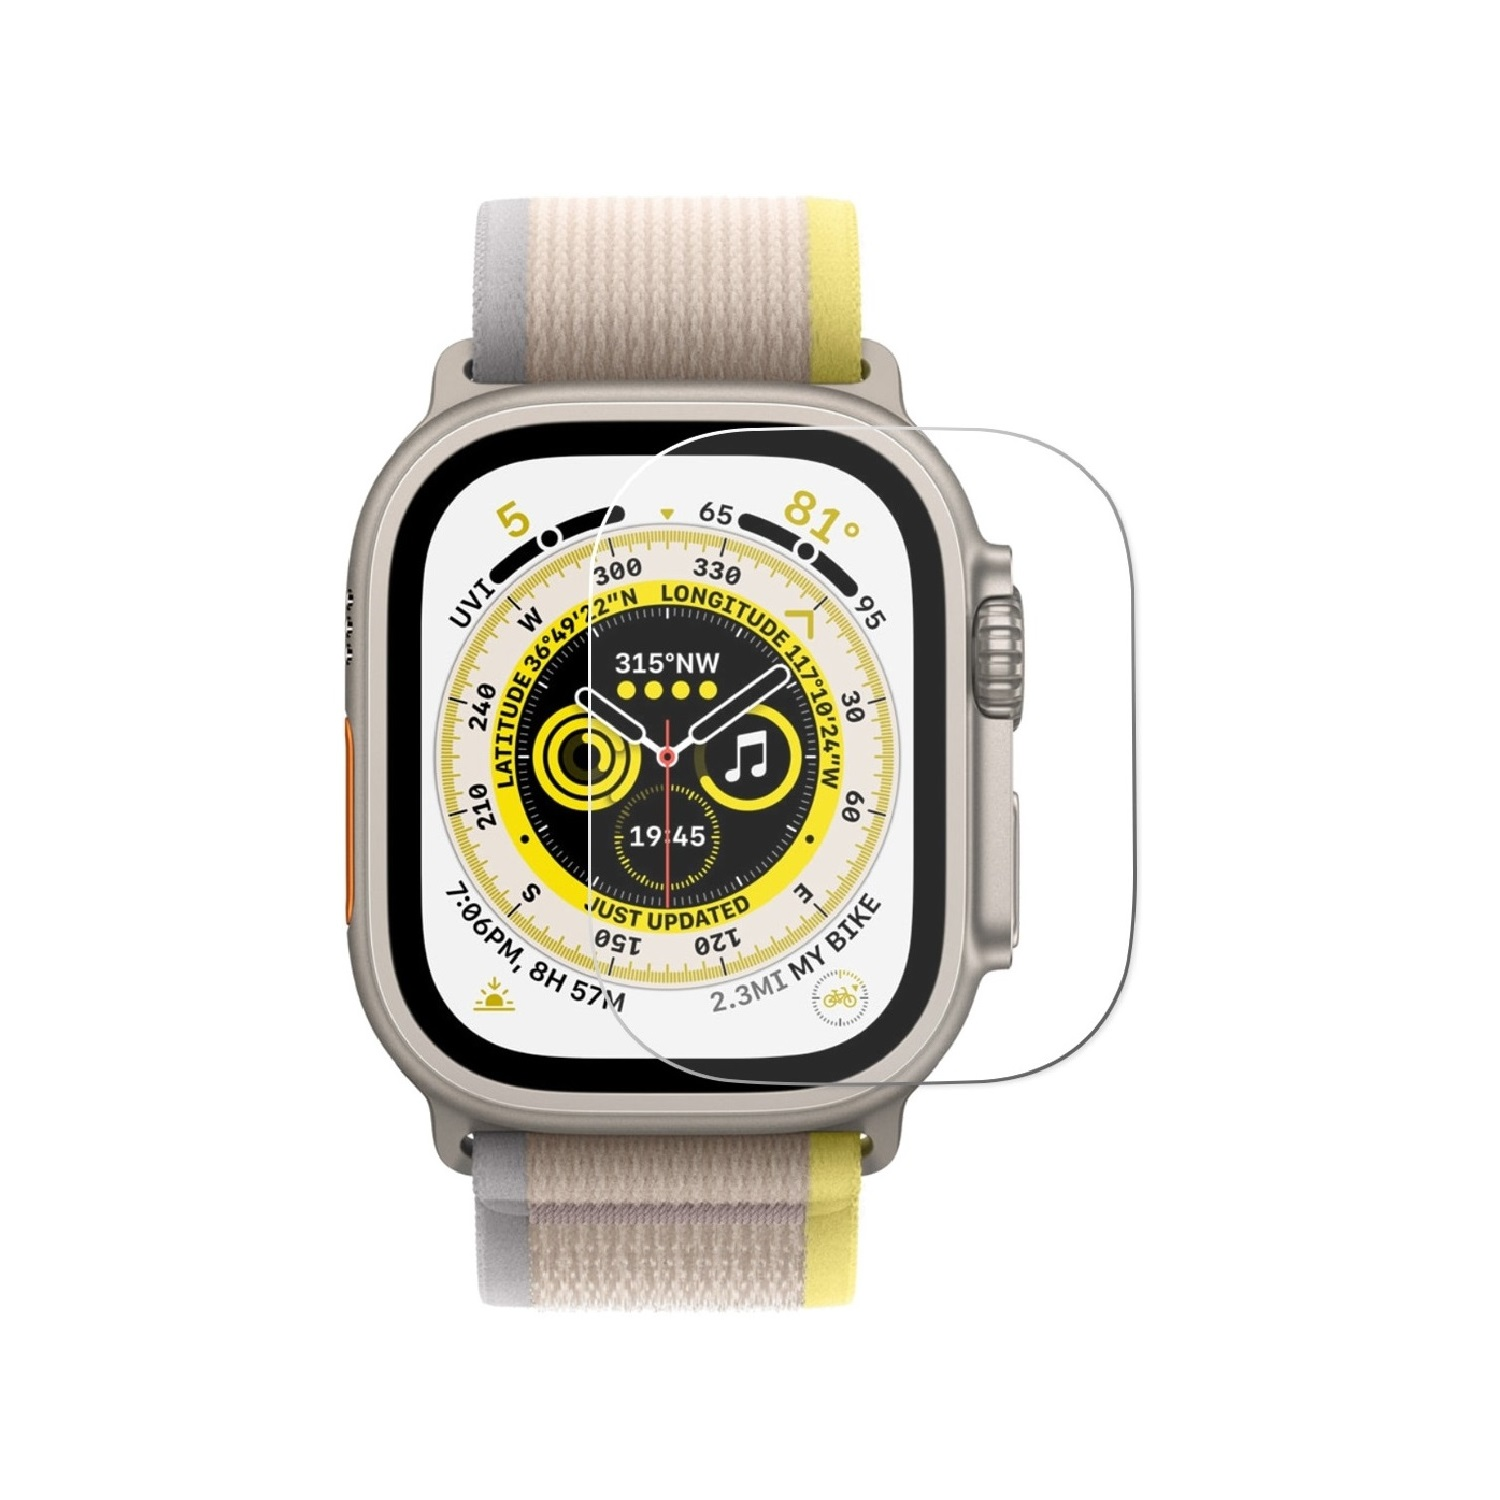 PROTECTORKING 2x Echtes Tempered 9H Watch HD Schutzglas Displayschutzfolie(für Hartglas 49mm) Apple Ultra KLAR